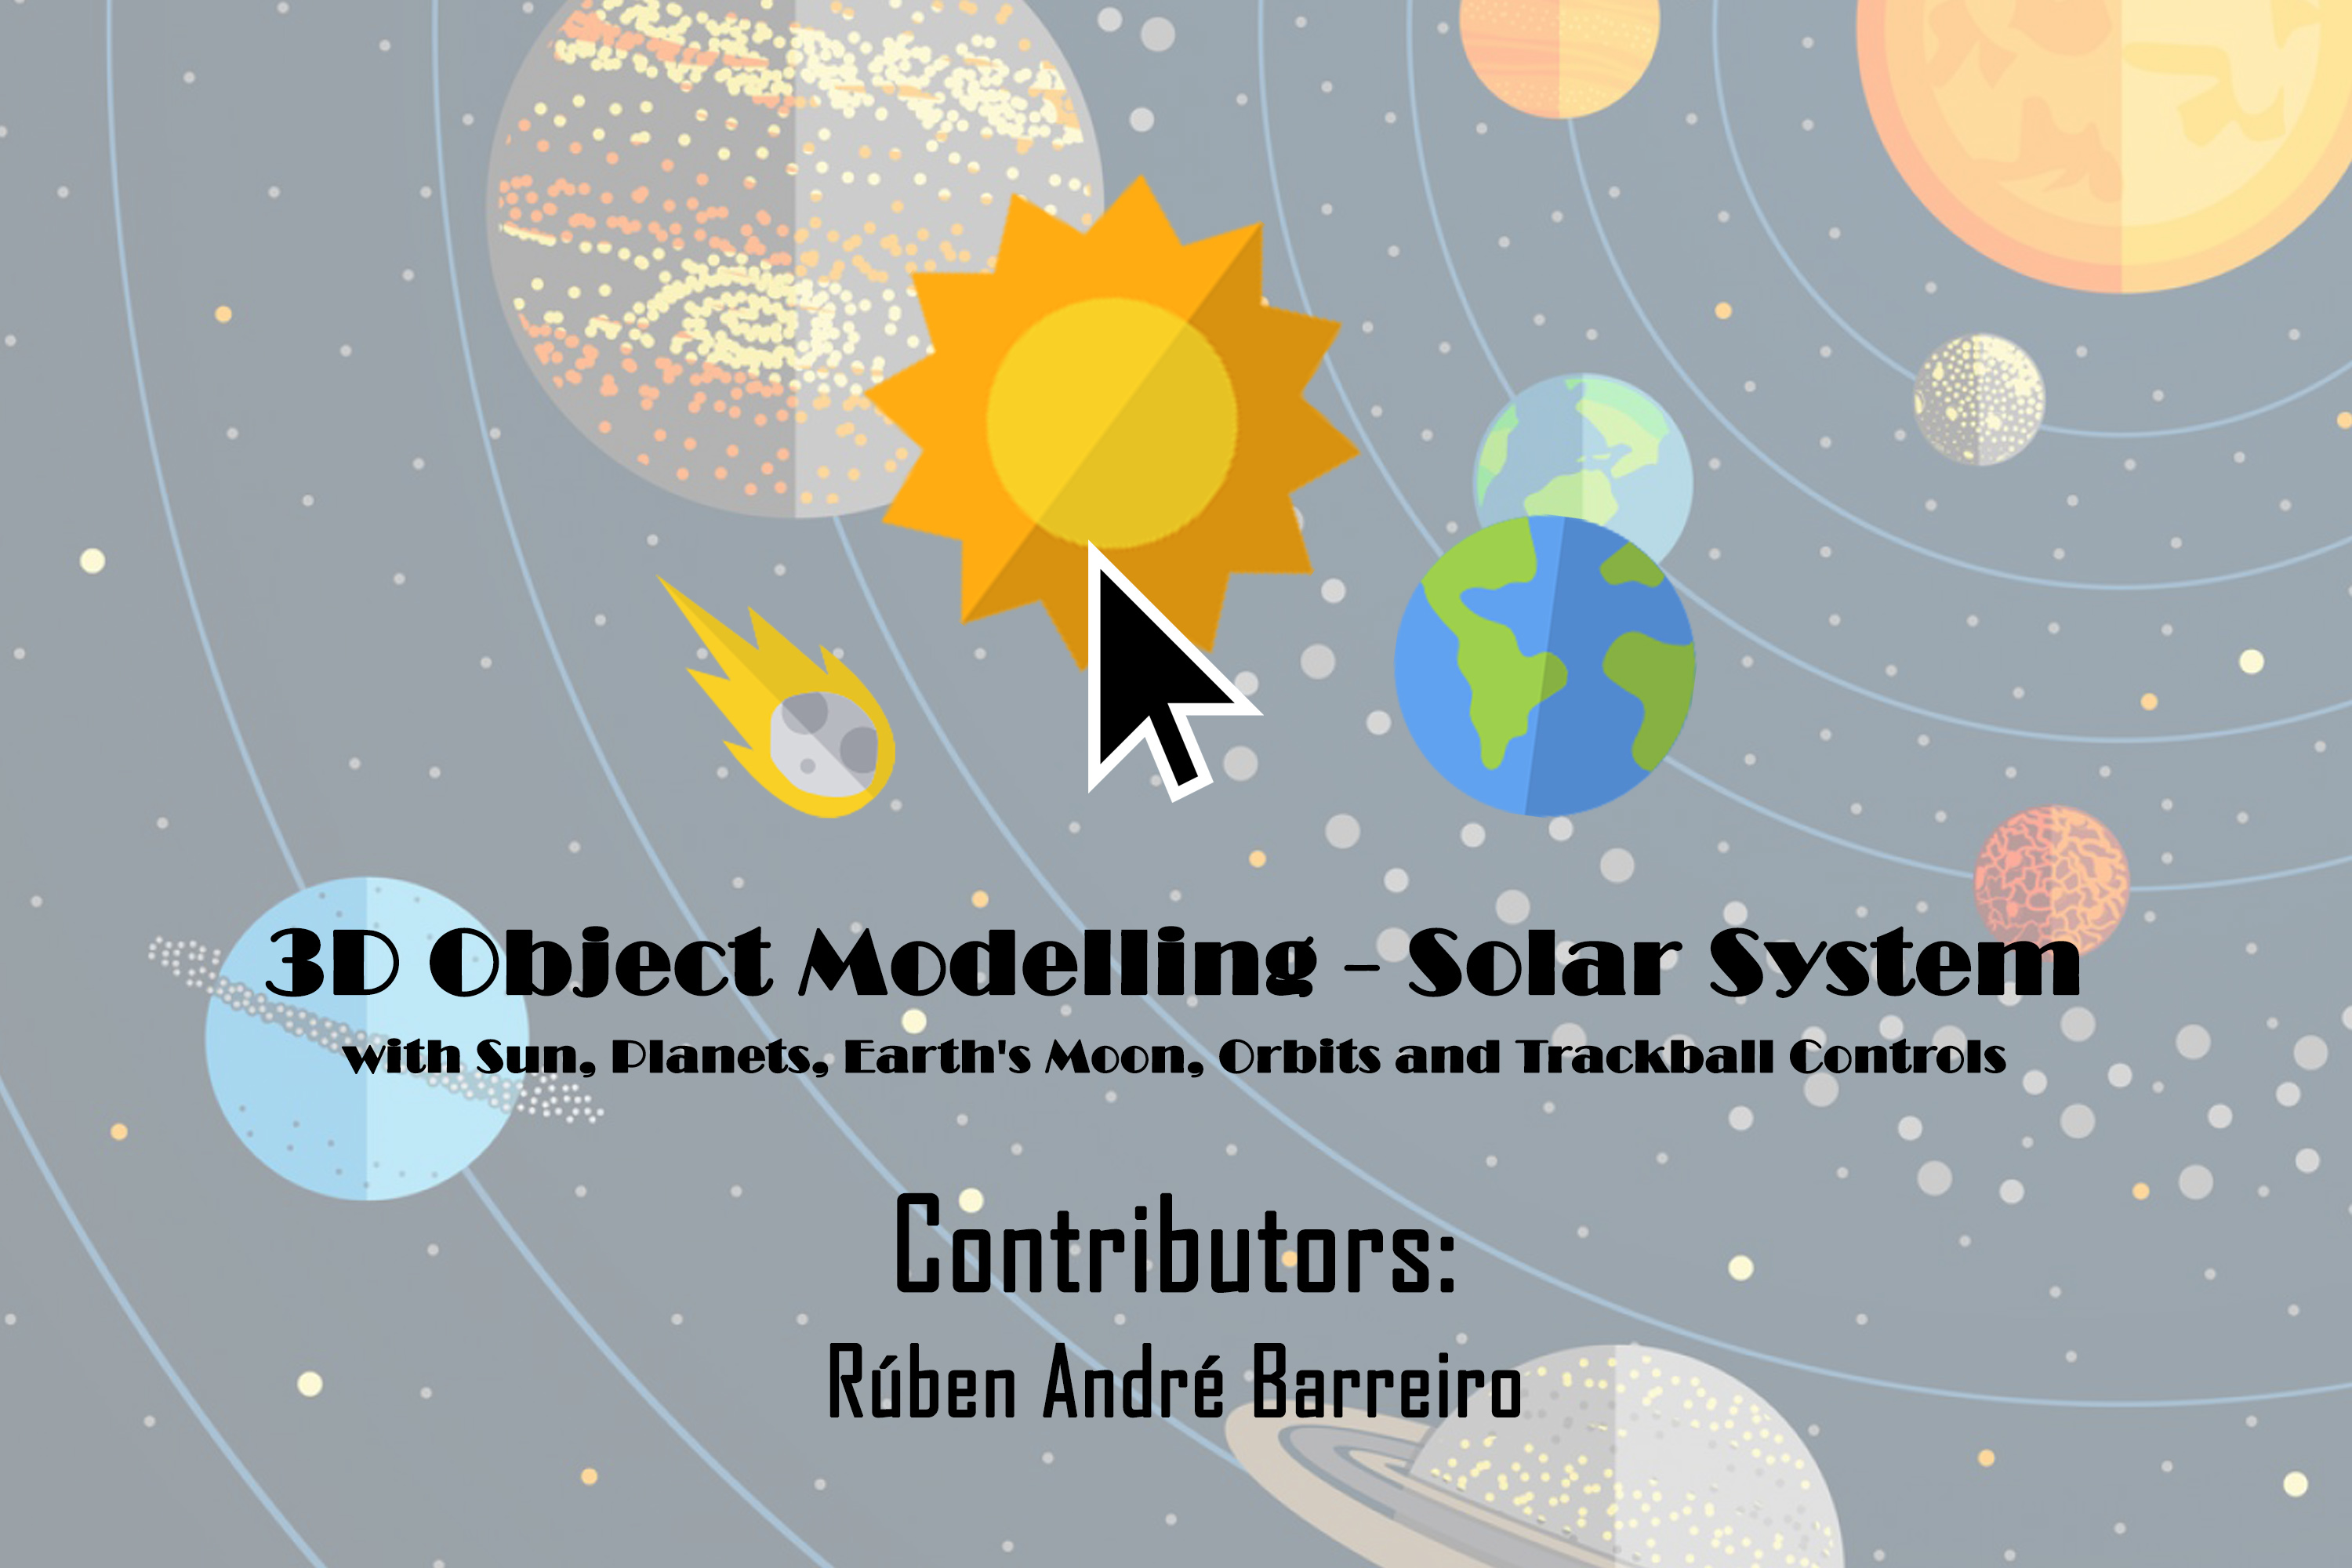 https://raw.githubusercontent.com/rubenandrebarreiro/3d-object-modelling-solar-system/master/imgs/JPGs/banner-1.jpg